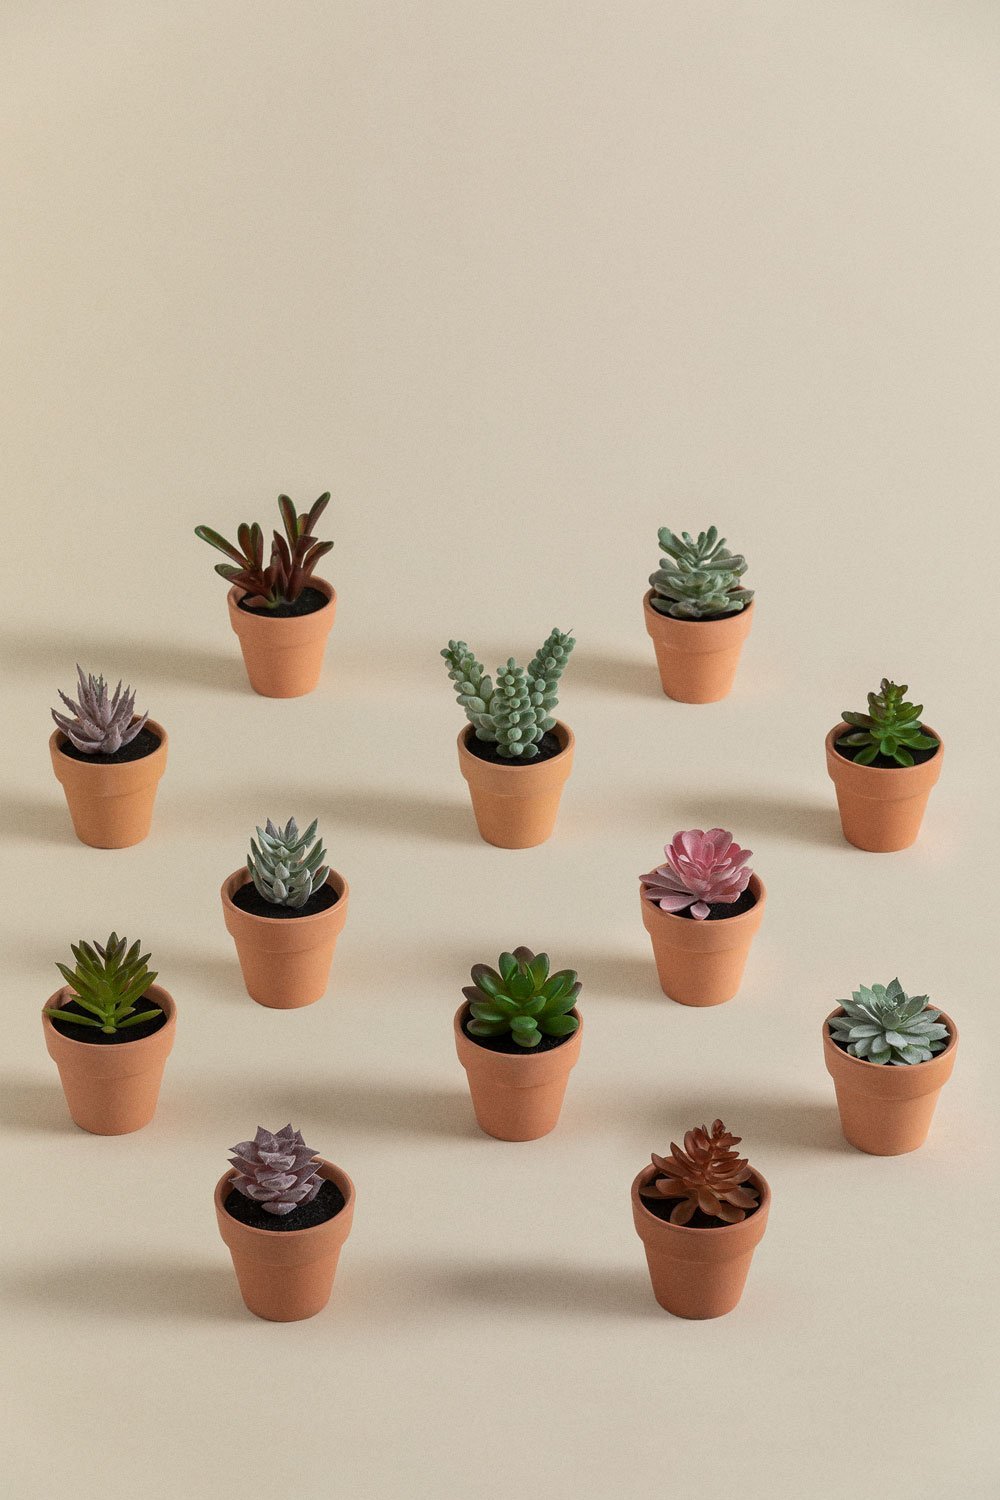 Pack da 12 mini cactus artificiali Amery, immagine della galleria 1